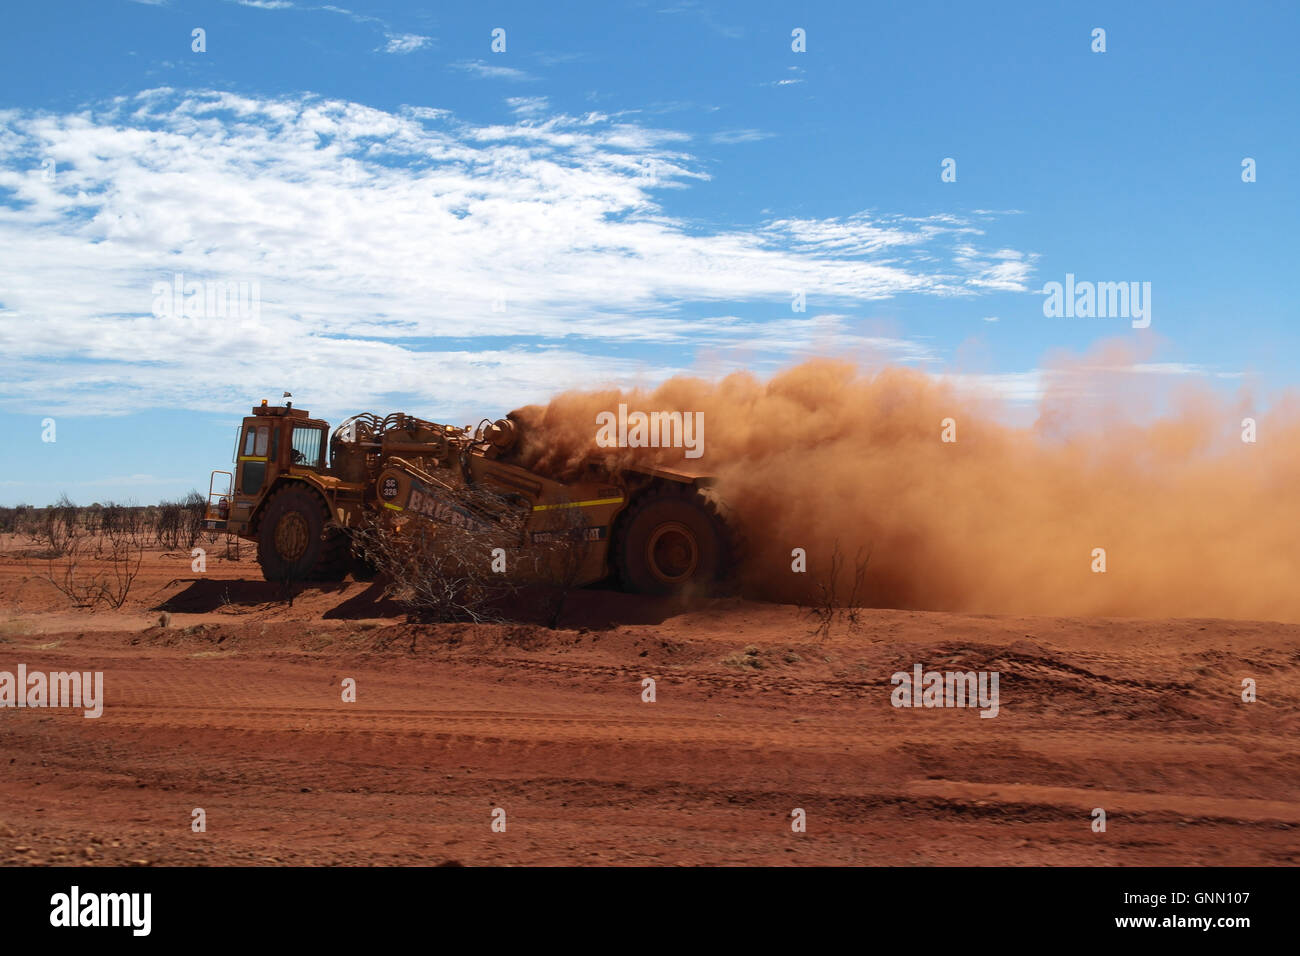 Les constructeurs de routes avec de lourdes machines dans l'Outback australien - Australie Banque D'Images